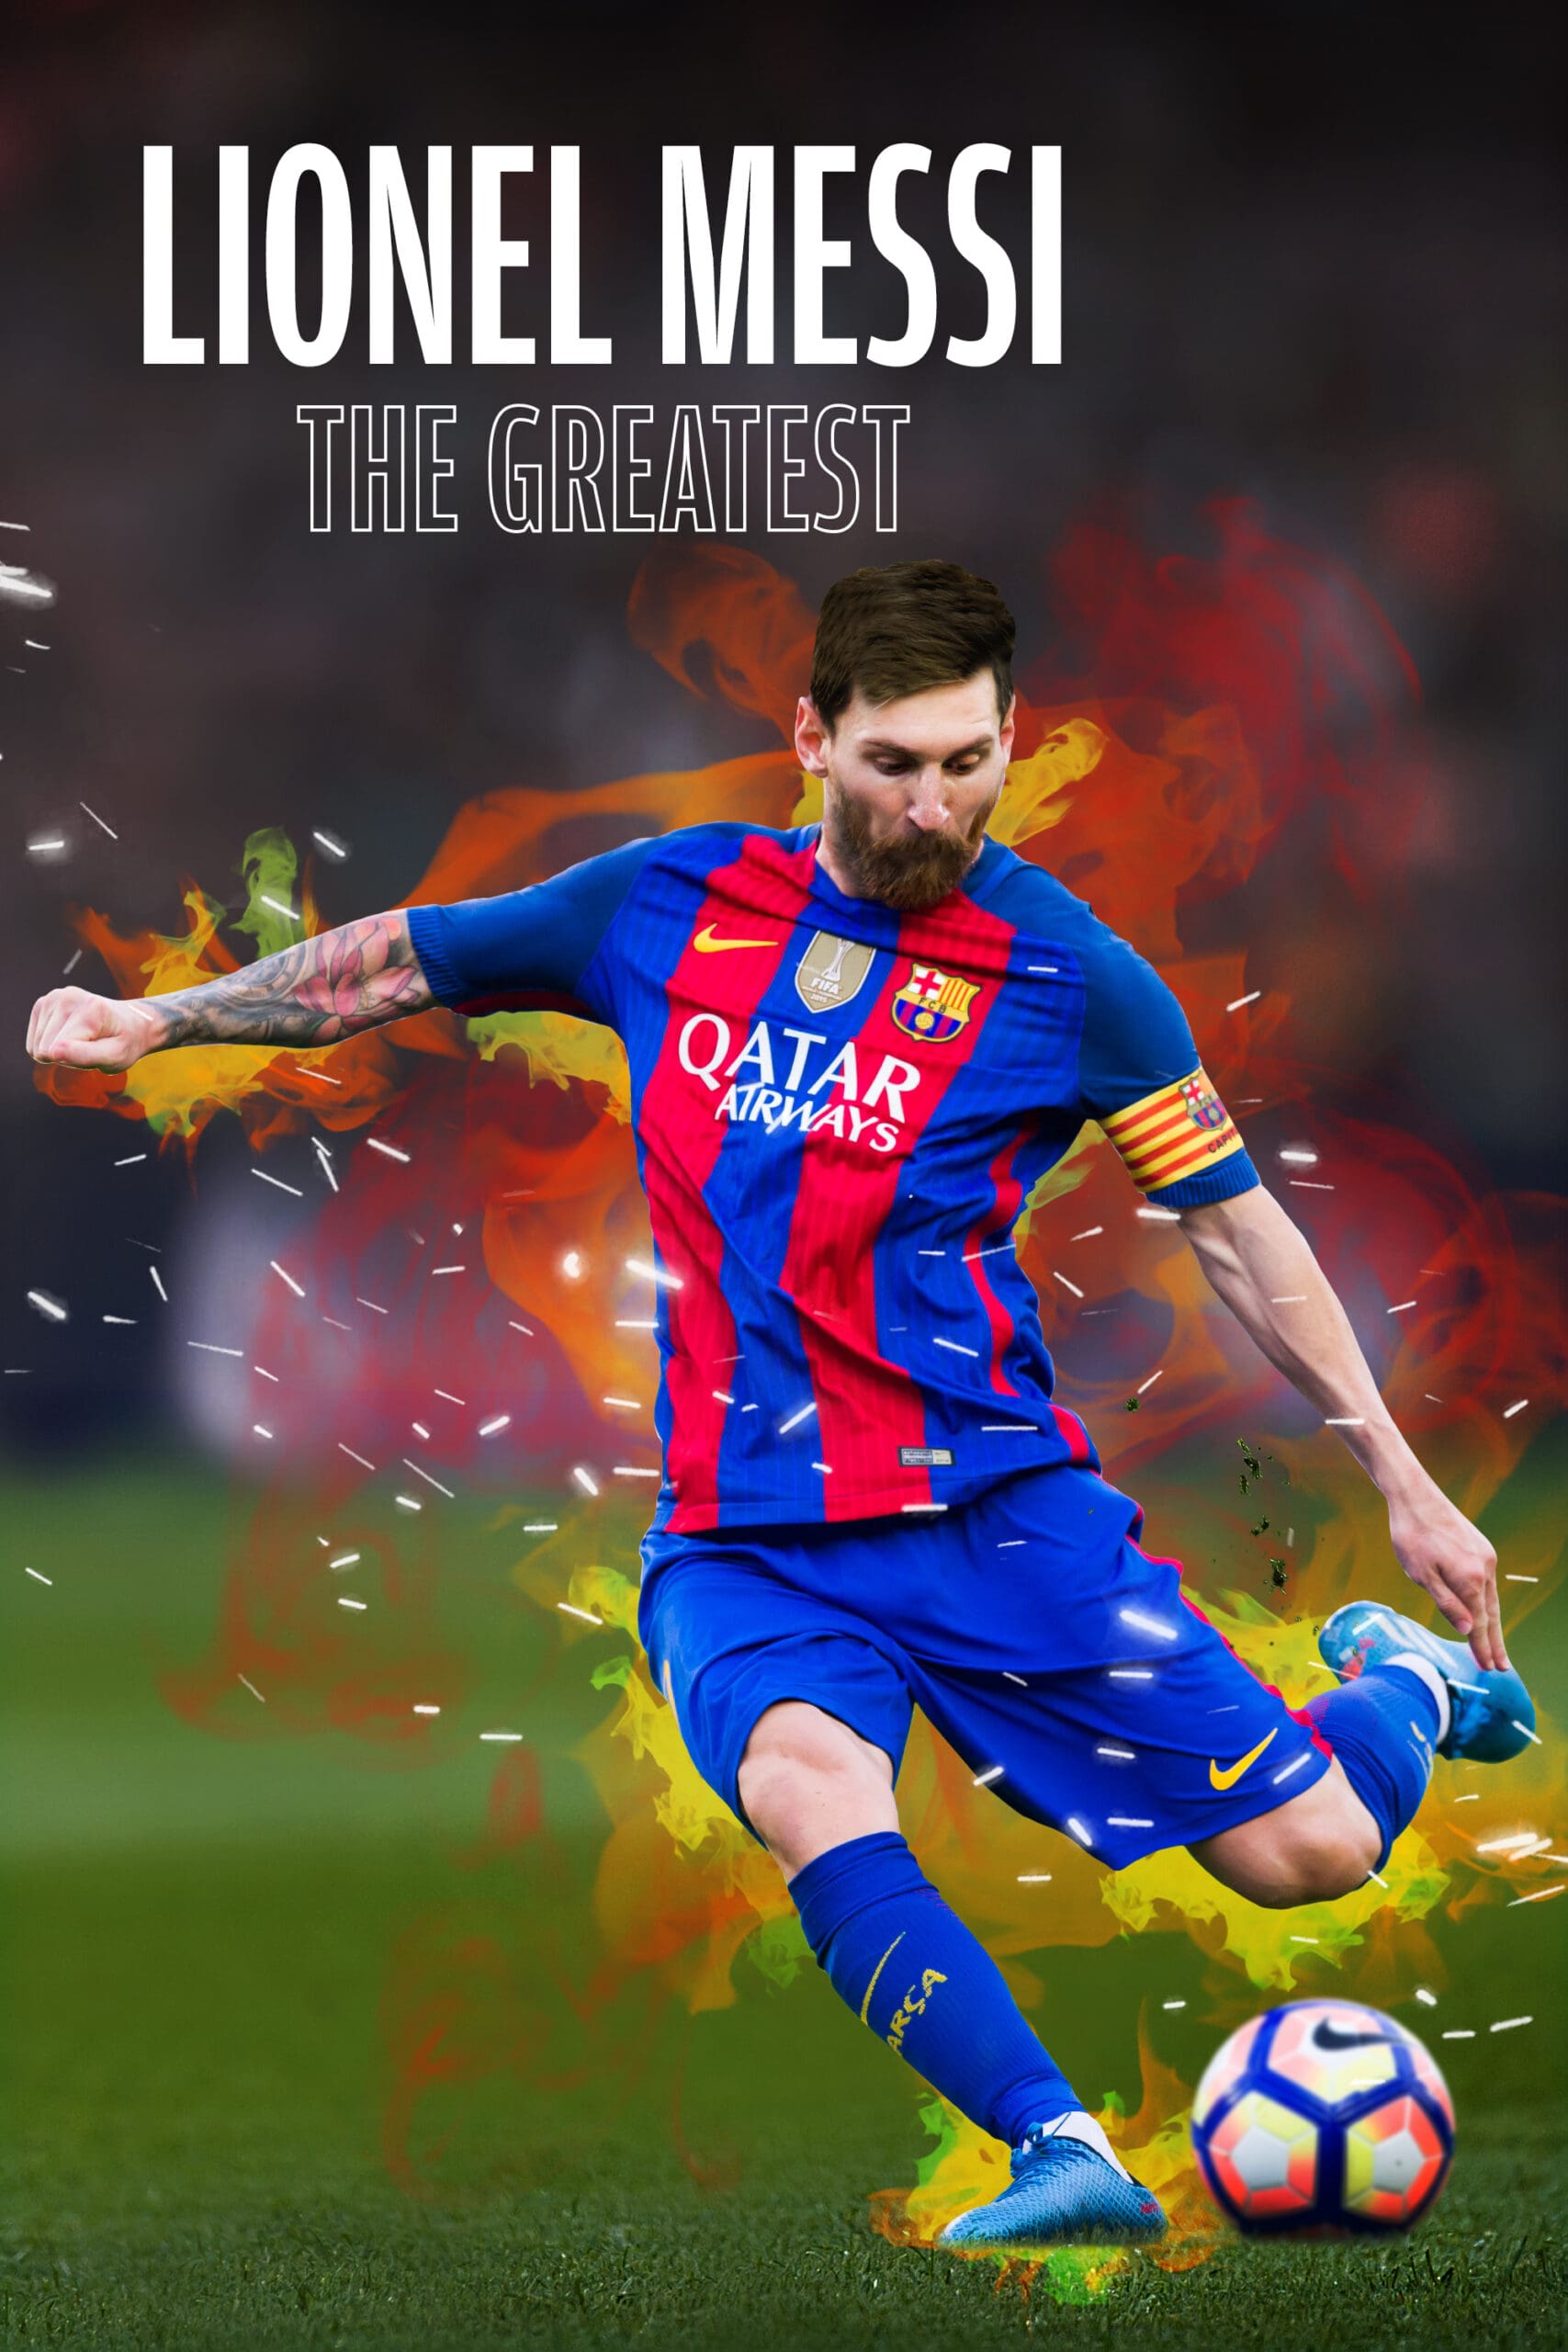 لیونل مسی: بهترین بازیکن جهان (Lionel Messi: The Greatest)